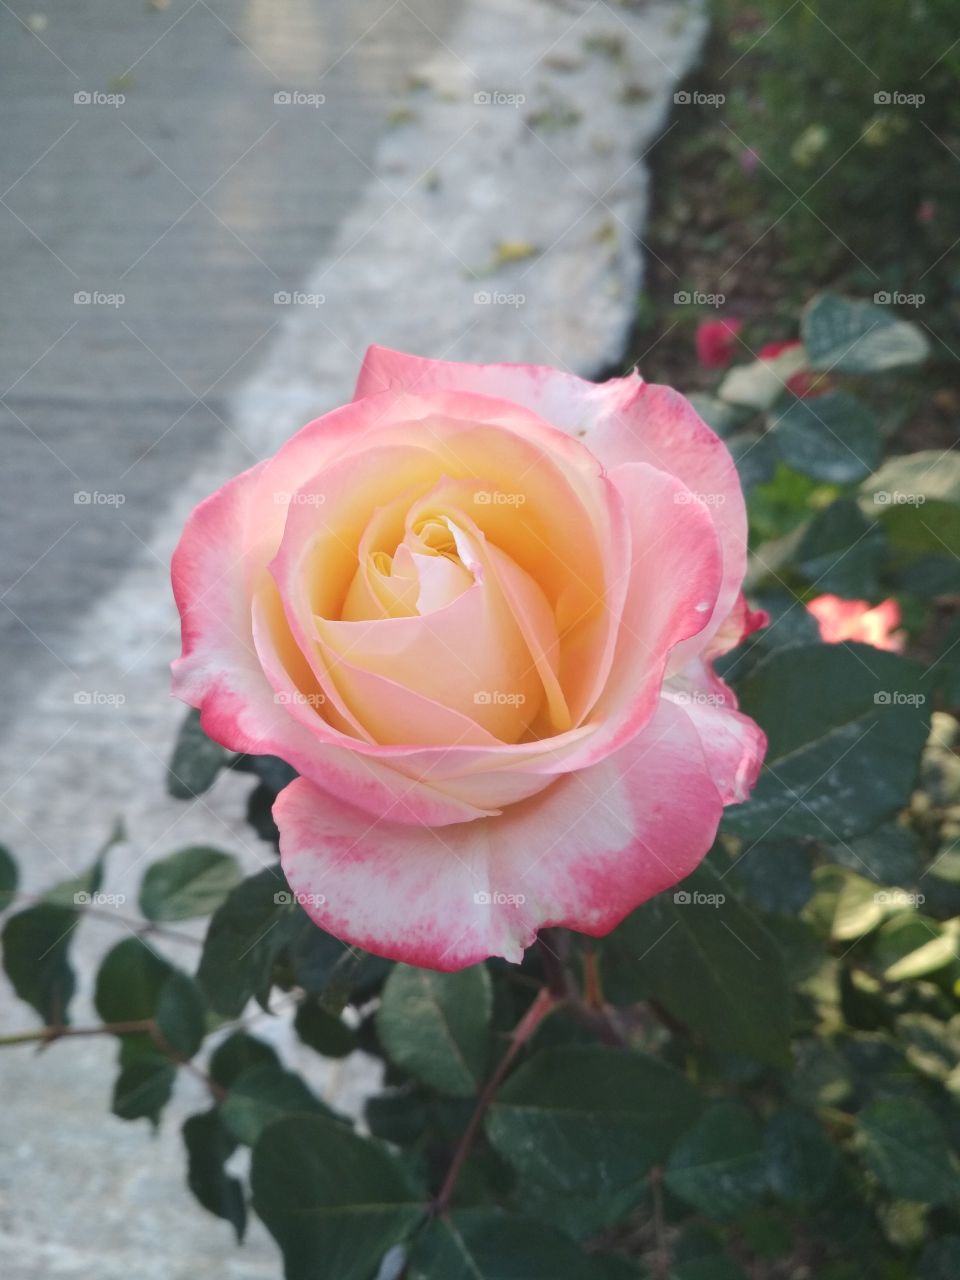 pink-yellow rose